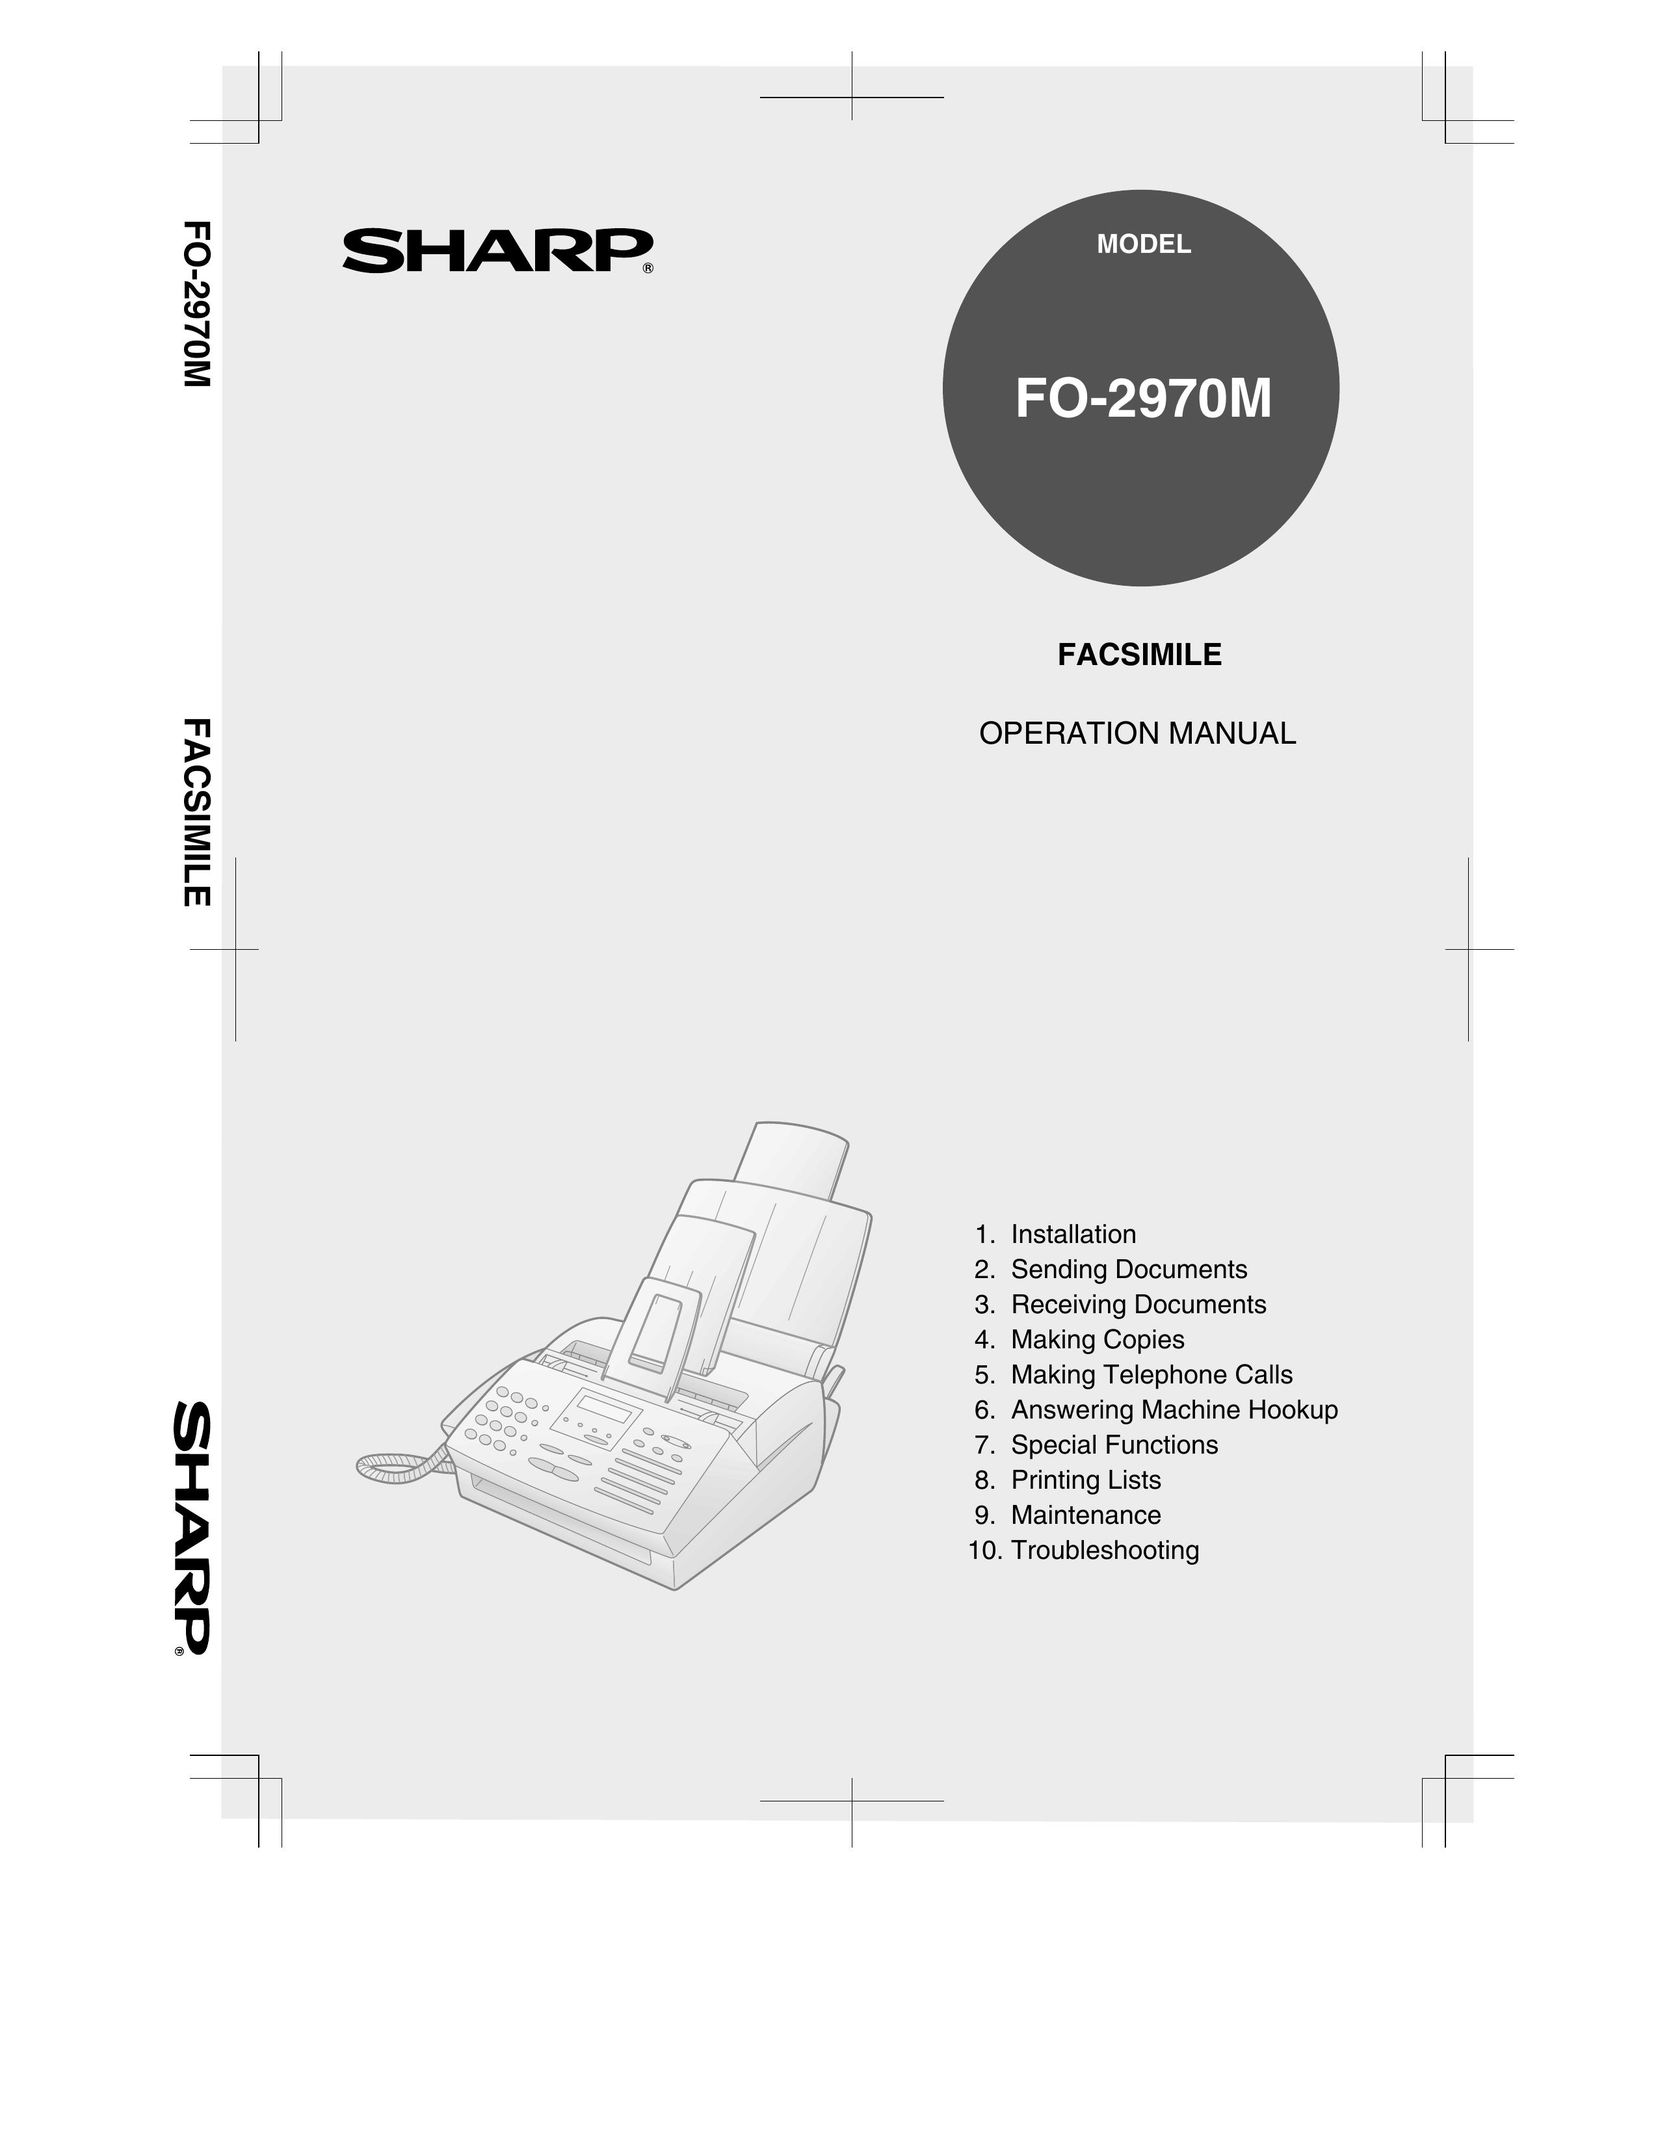 Sharp FO-2970M Fax Machine User Manual